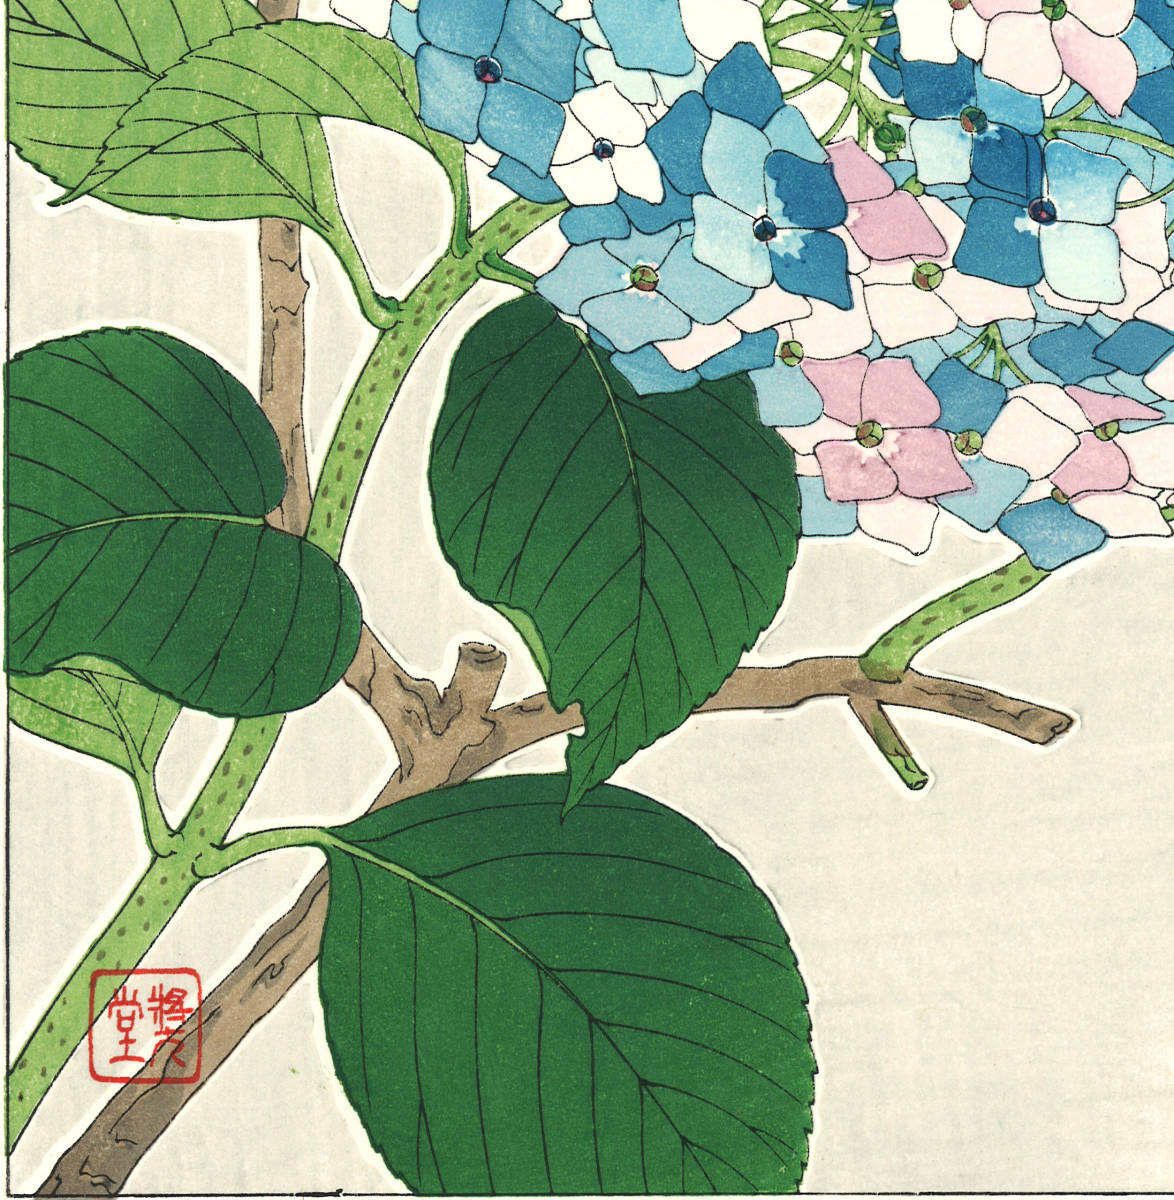 河原崎奨堂 (Kawarazaki Shodo) (1899~1973) 木版画F075 紫陽花 (Hydrangea)初版昭和初期～京都の一流の摺師の技をご堪能下さい。_画像10